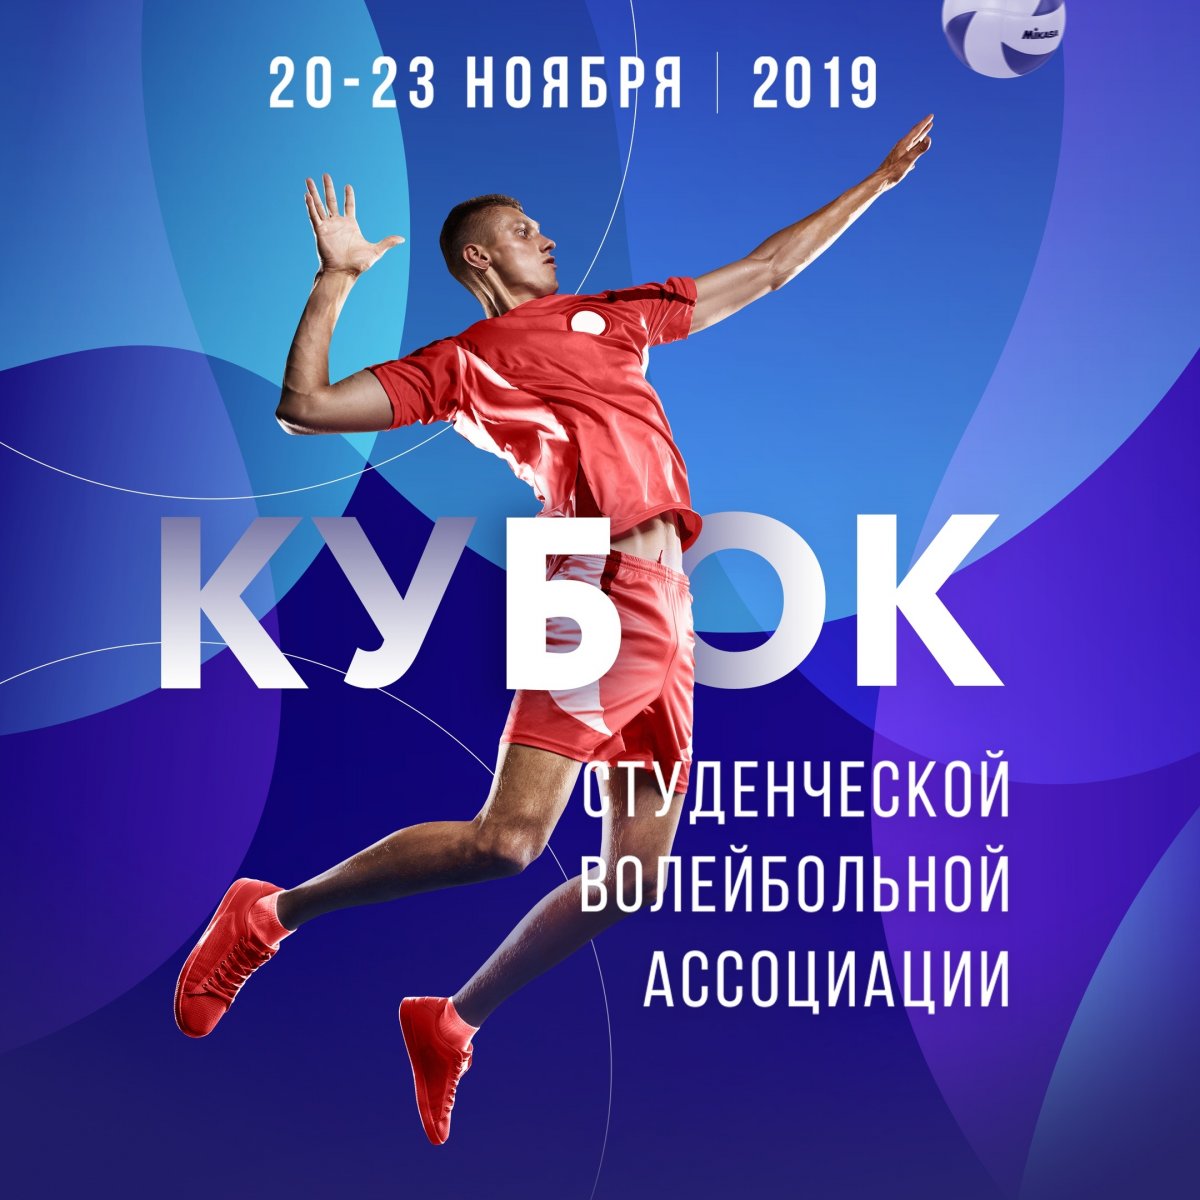 С 20 по 23 ноября в Москве пройдёт финальный этап Кубка Студенческой волейбольной ассоциации (СВА). Его организаторами выступают СВА